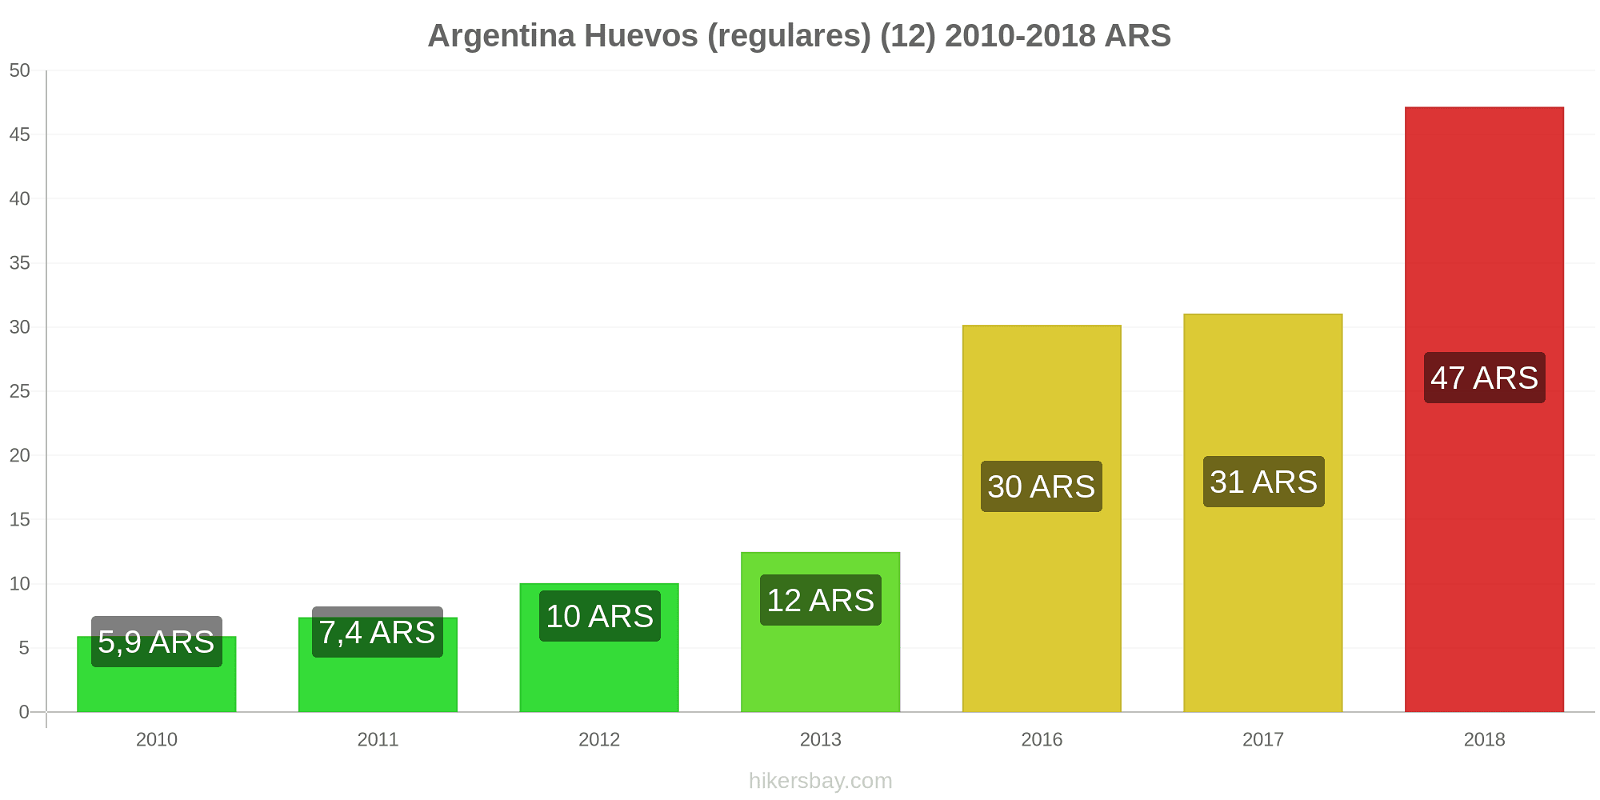 Argentina cambios de precios Huevos (normales) (12 unidades) hikersbay.com